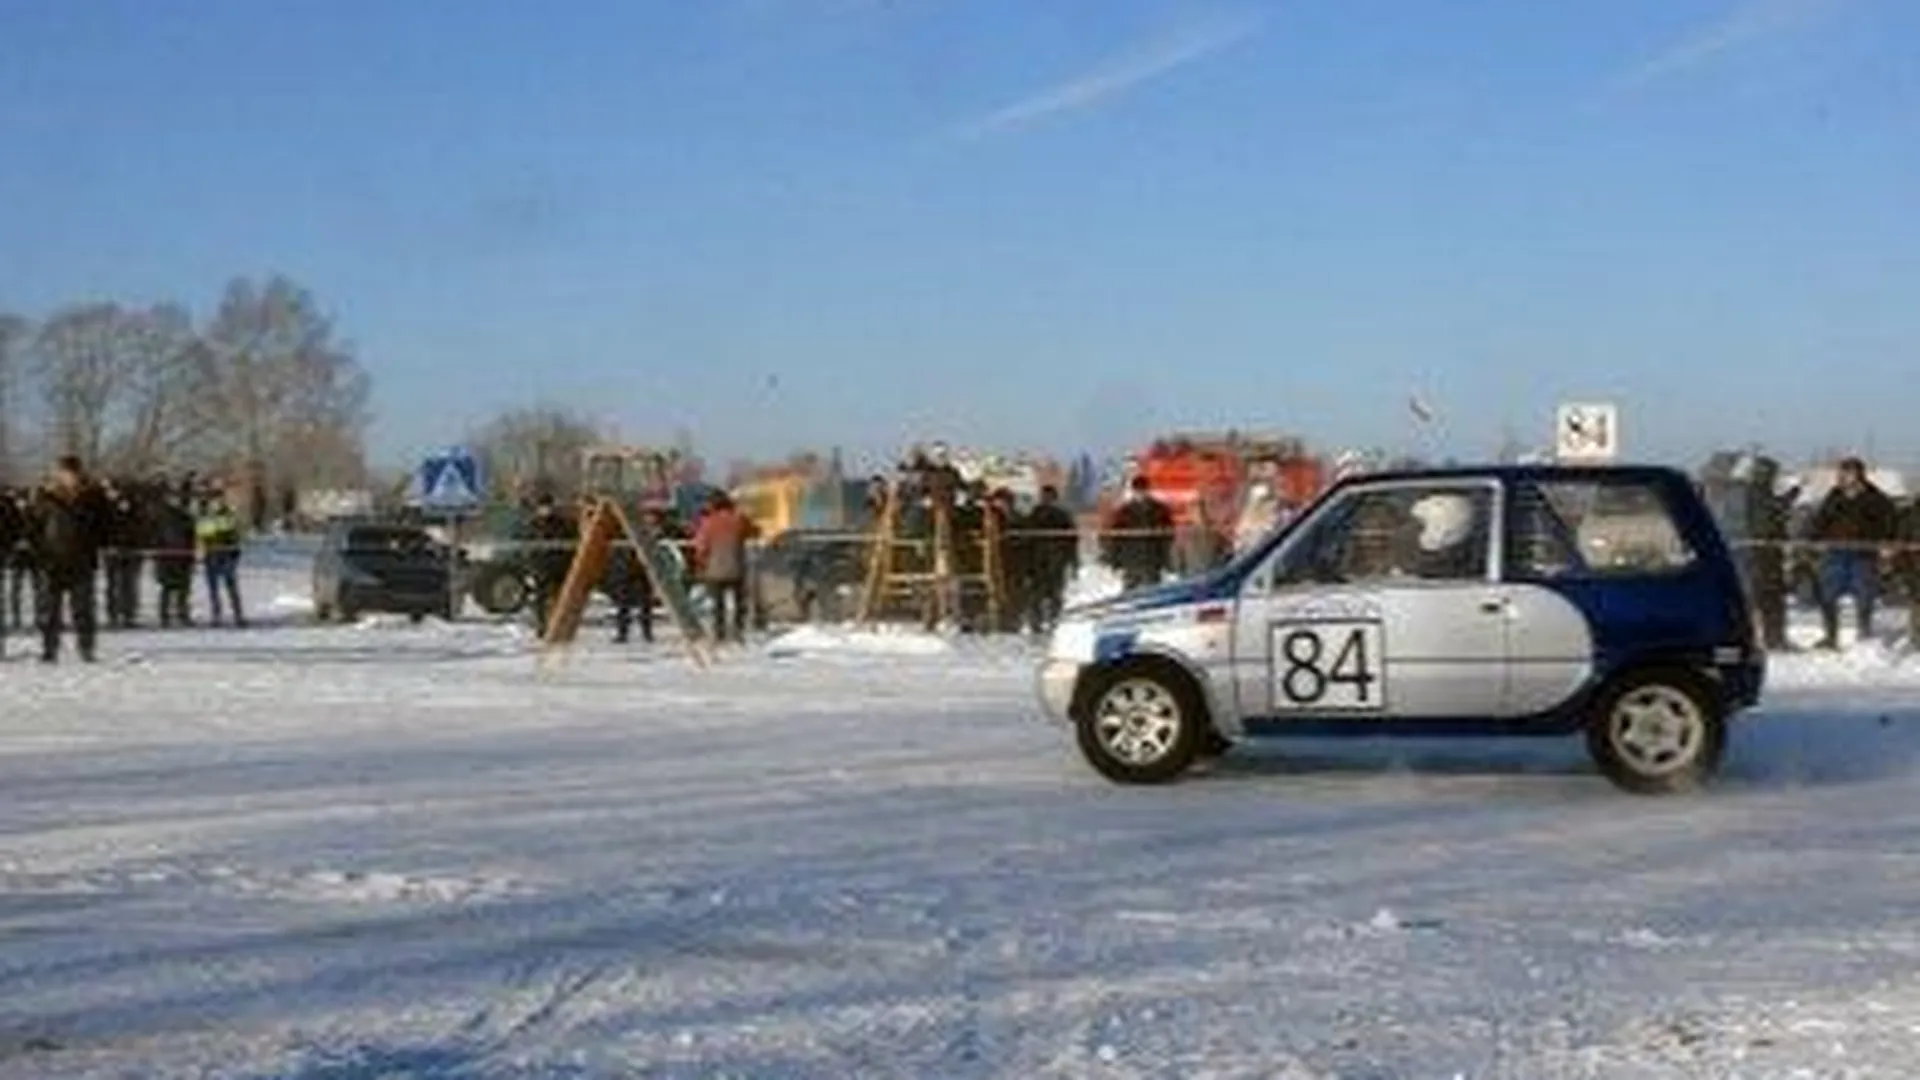 Соревнования по автокроссу среди детей пройдут в Пушкинском районе 23 декабря